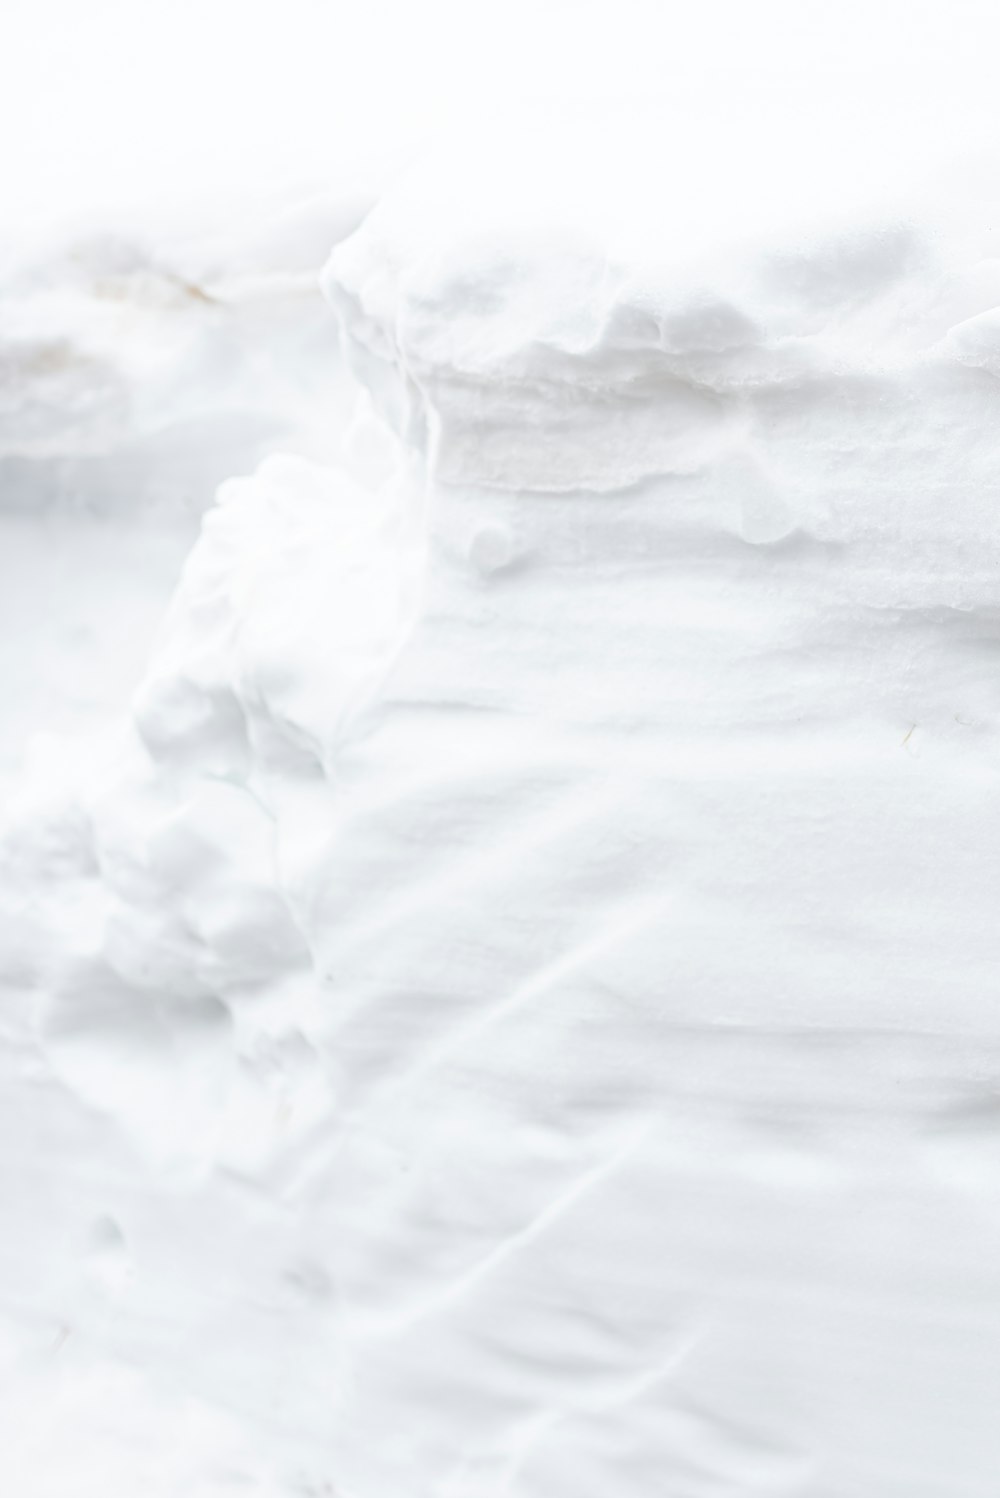 white ice on white textile